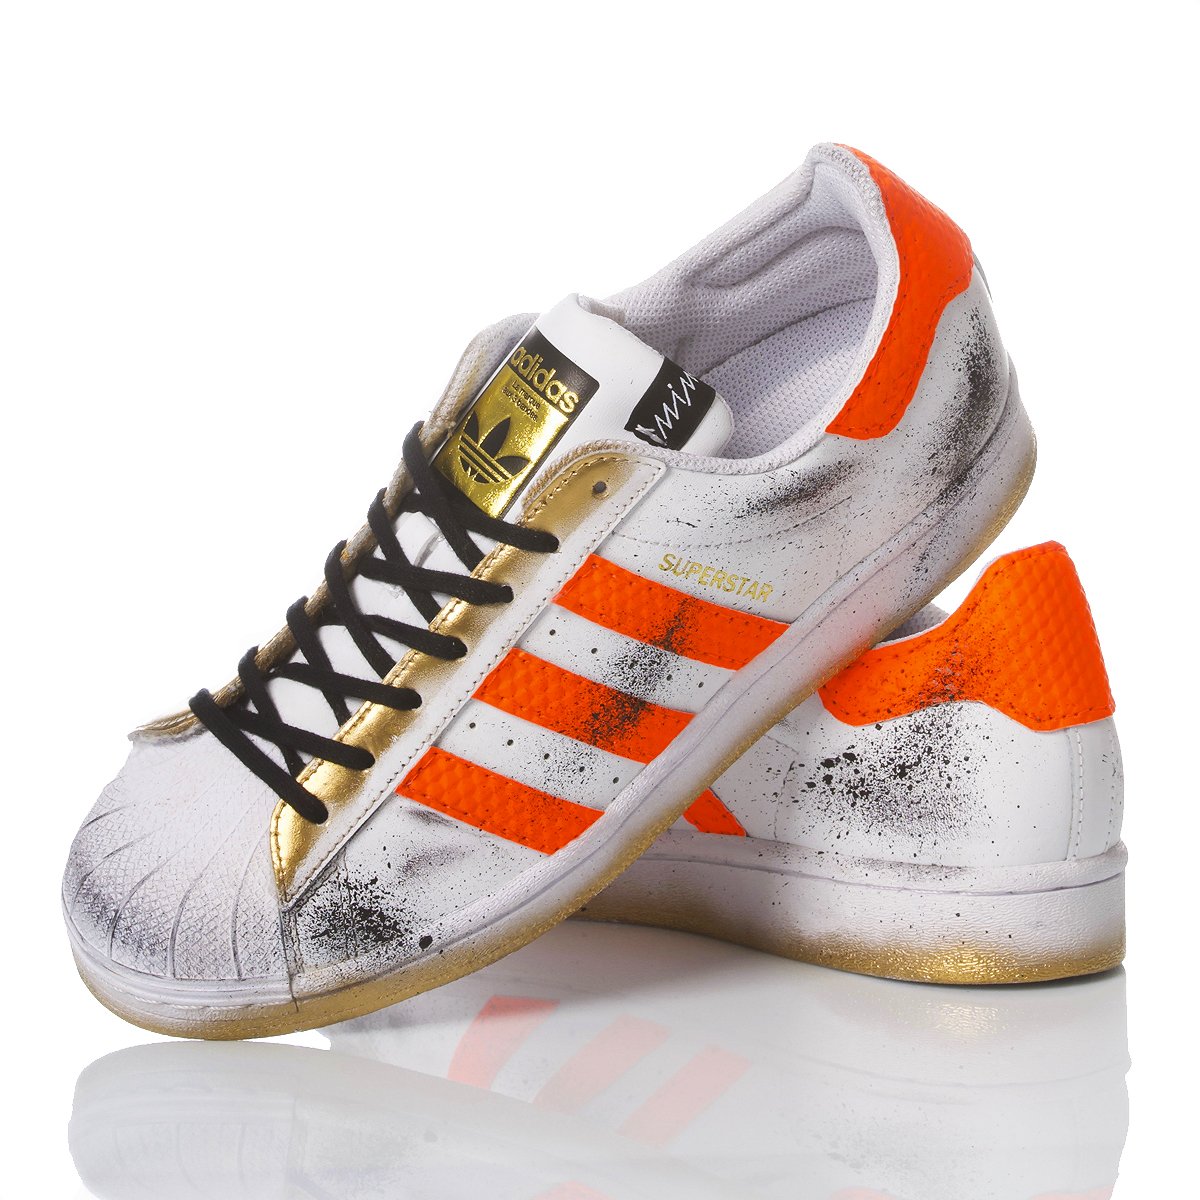 Adidas Superstar Orange Boost Superstar Special